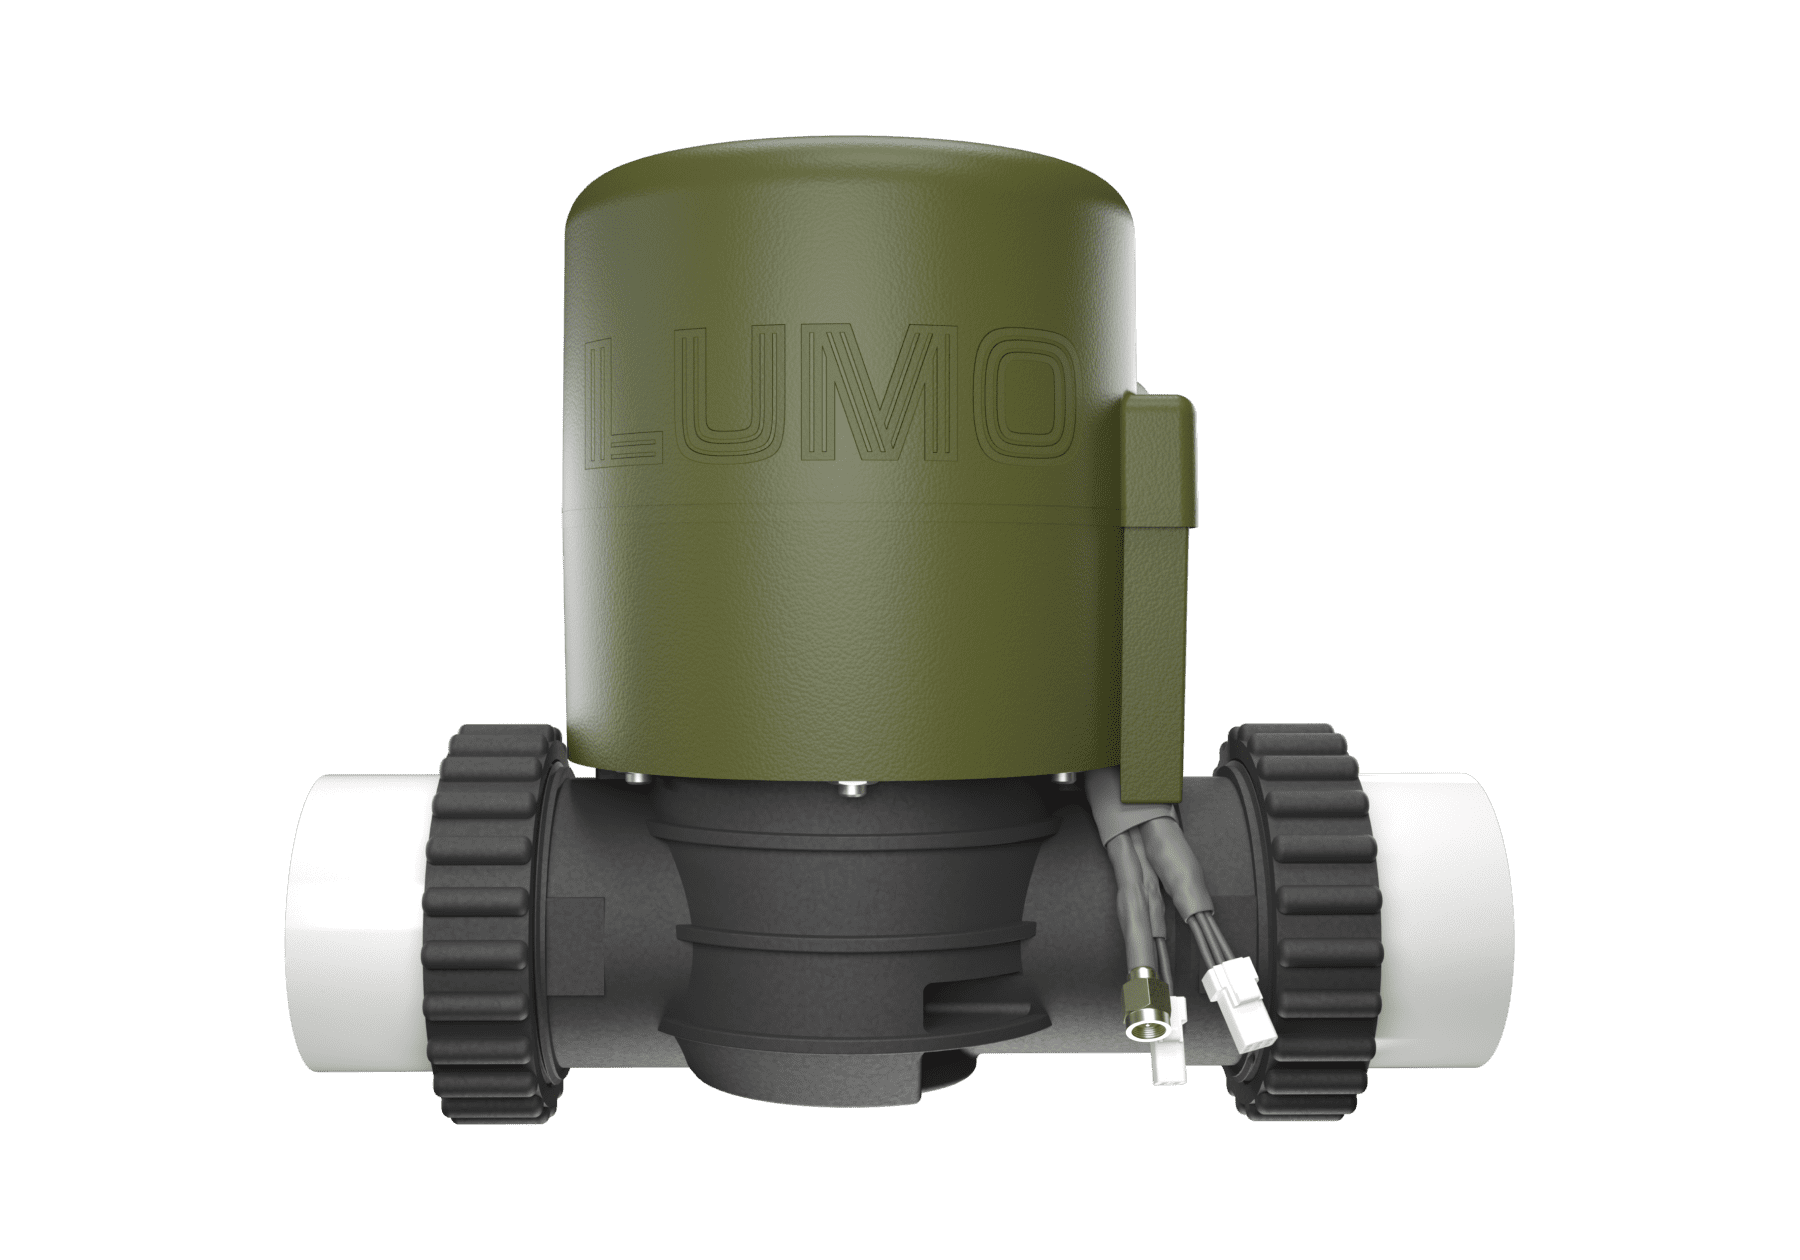 Lumo Smart Irrigation Valve